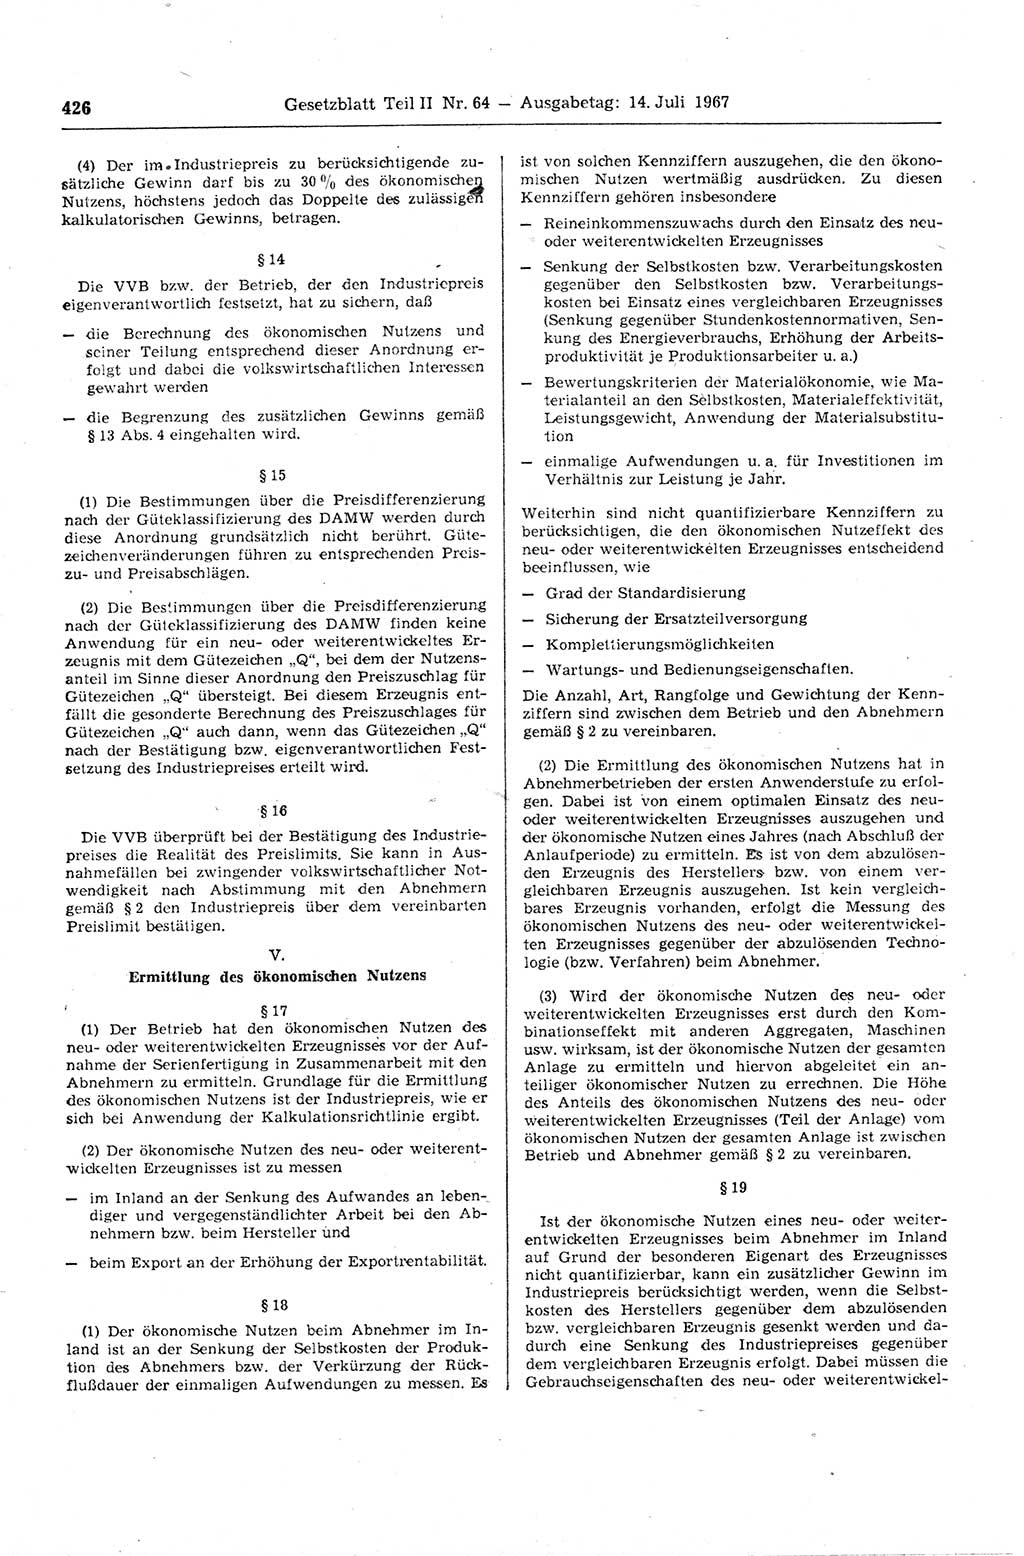 Gesetzblatt (GBl.) der Deutschen Demokratischen Republik (DDR) Teil ⅠⅠ 1967, Seite 426 (GBl. DDR ⅠⅠ 1967, S. 426)